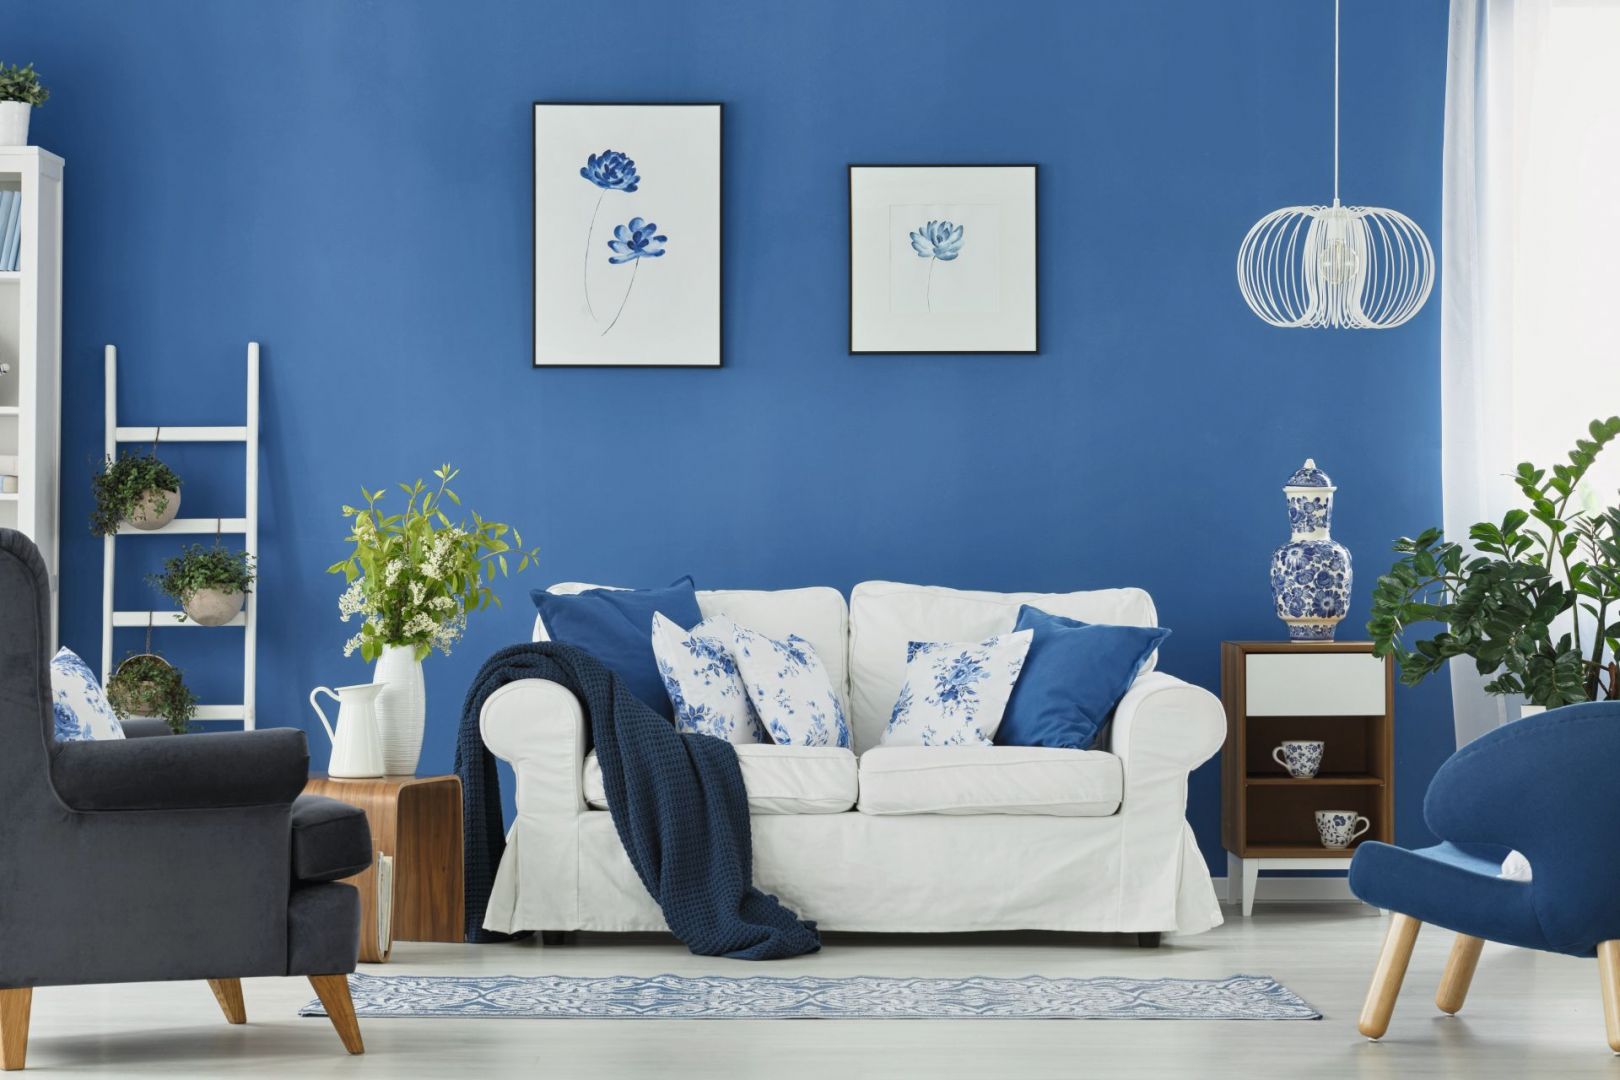 Niebieska ściana zestawiona z białymi meblami da efekt świeżego wnętrza w zawsze modnym marynarskim stylu. Fot. Jedynka